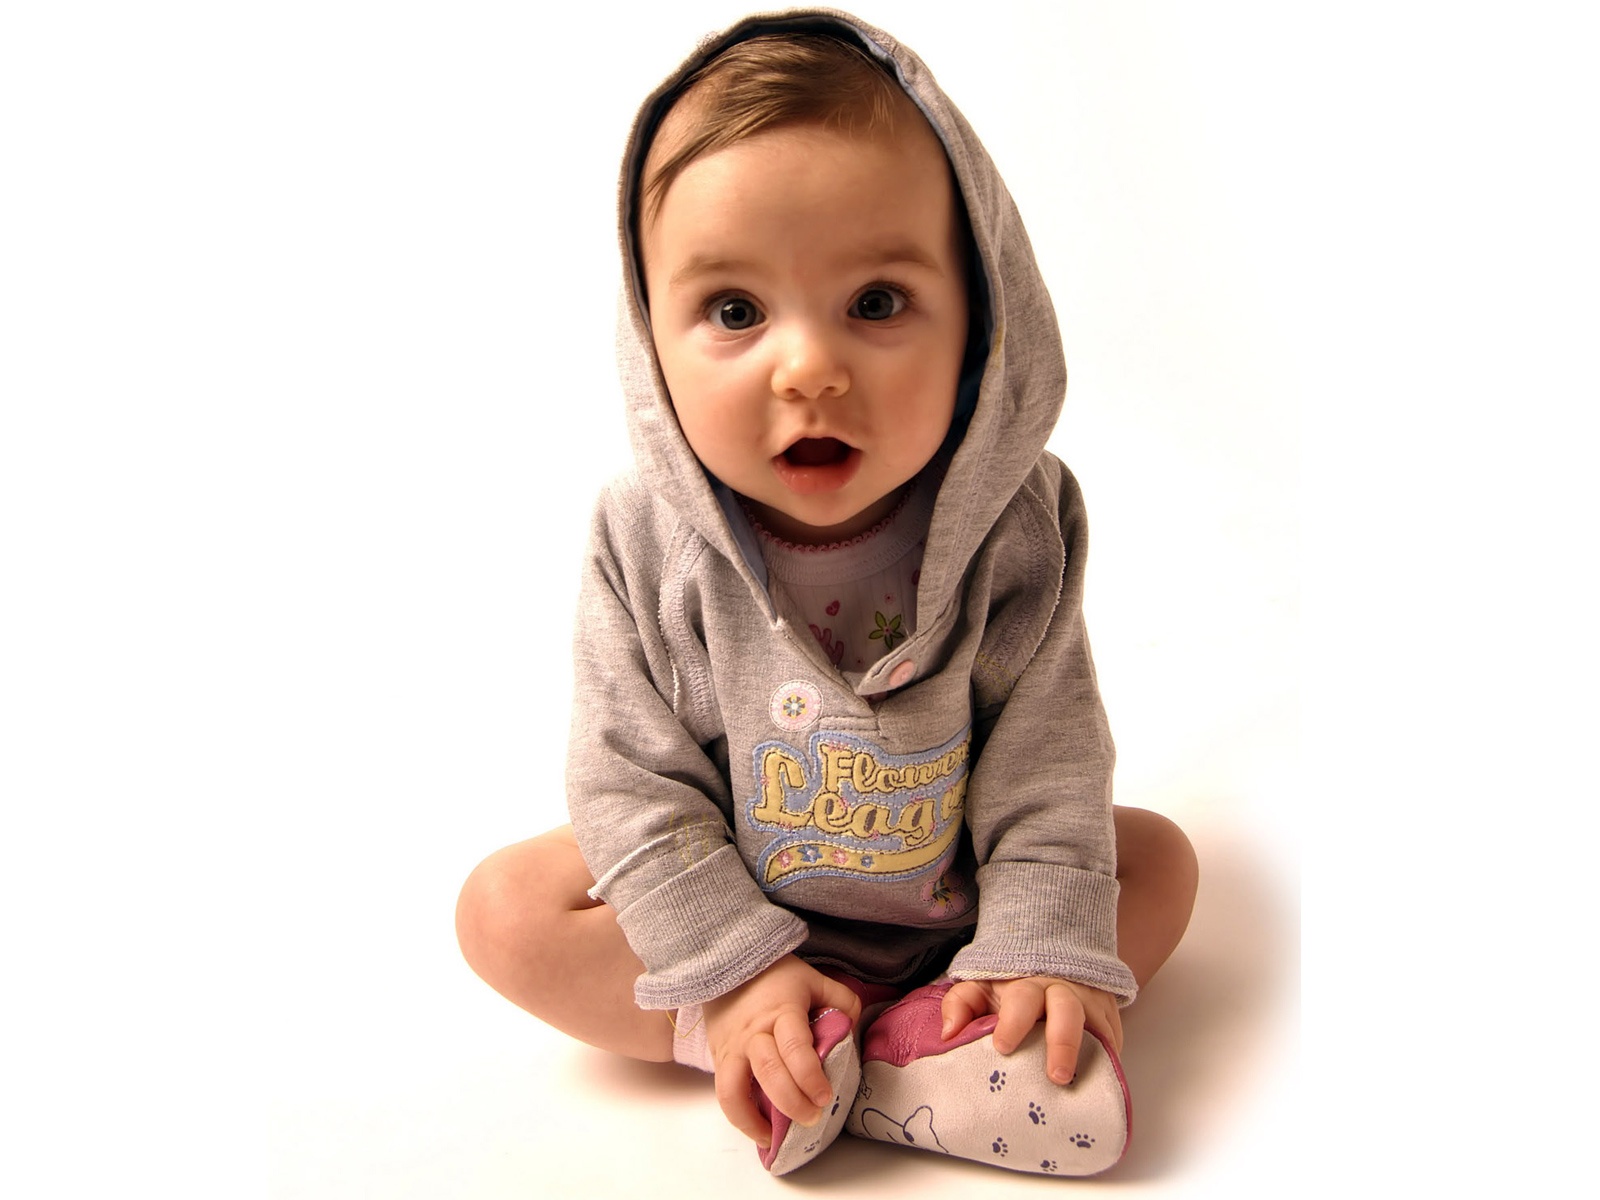 Cute Little Baby Boy - Cute Baby Boy - HD Wallpaper 